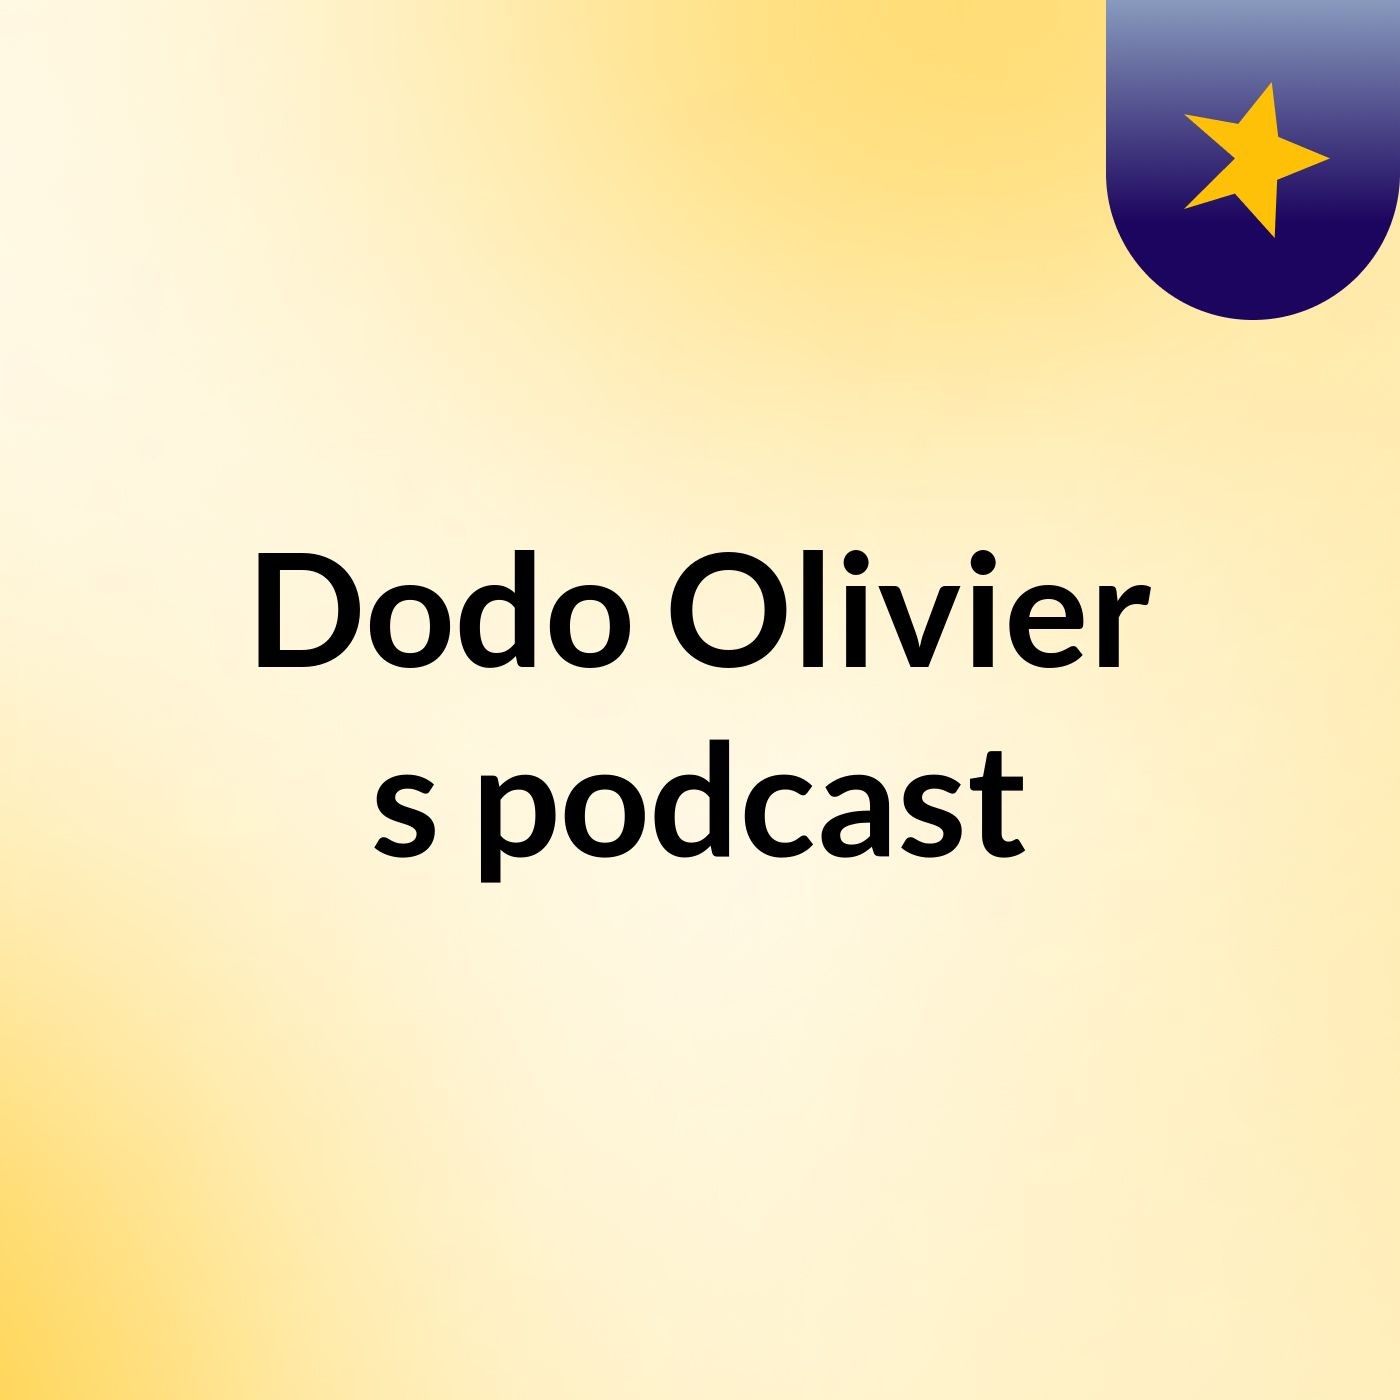 Dodo Olivier's podcast